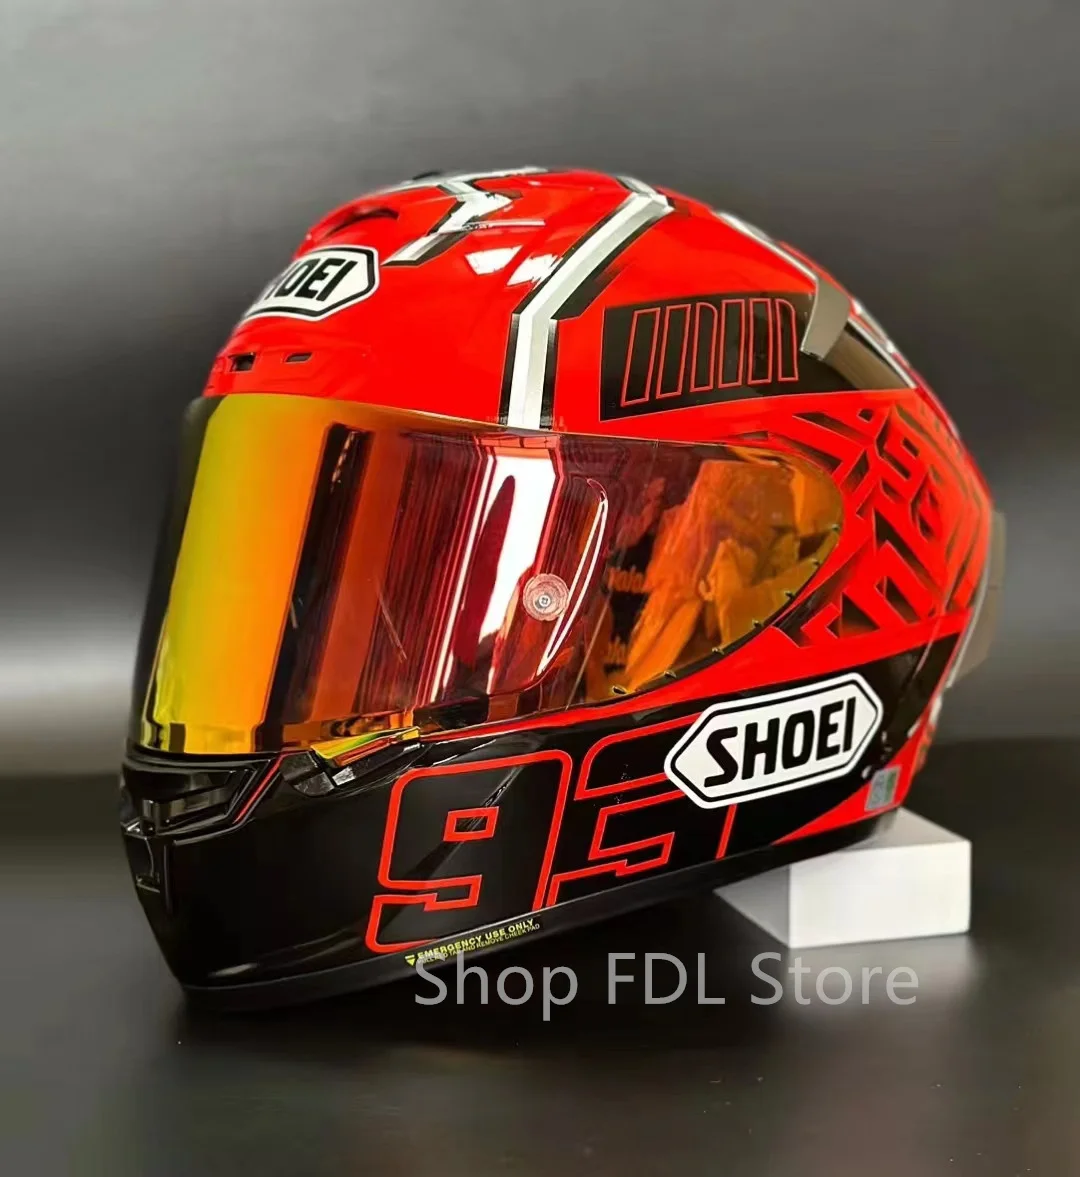 

Шлем для гоночного мотоцикла SHOEI X14, шлем на все лицо X-четырнадцать R1 60-я Юбилейная версия, красный шлем с муравьями